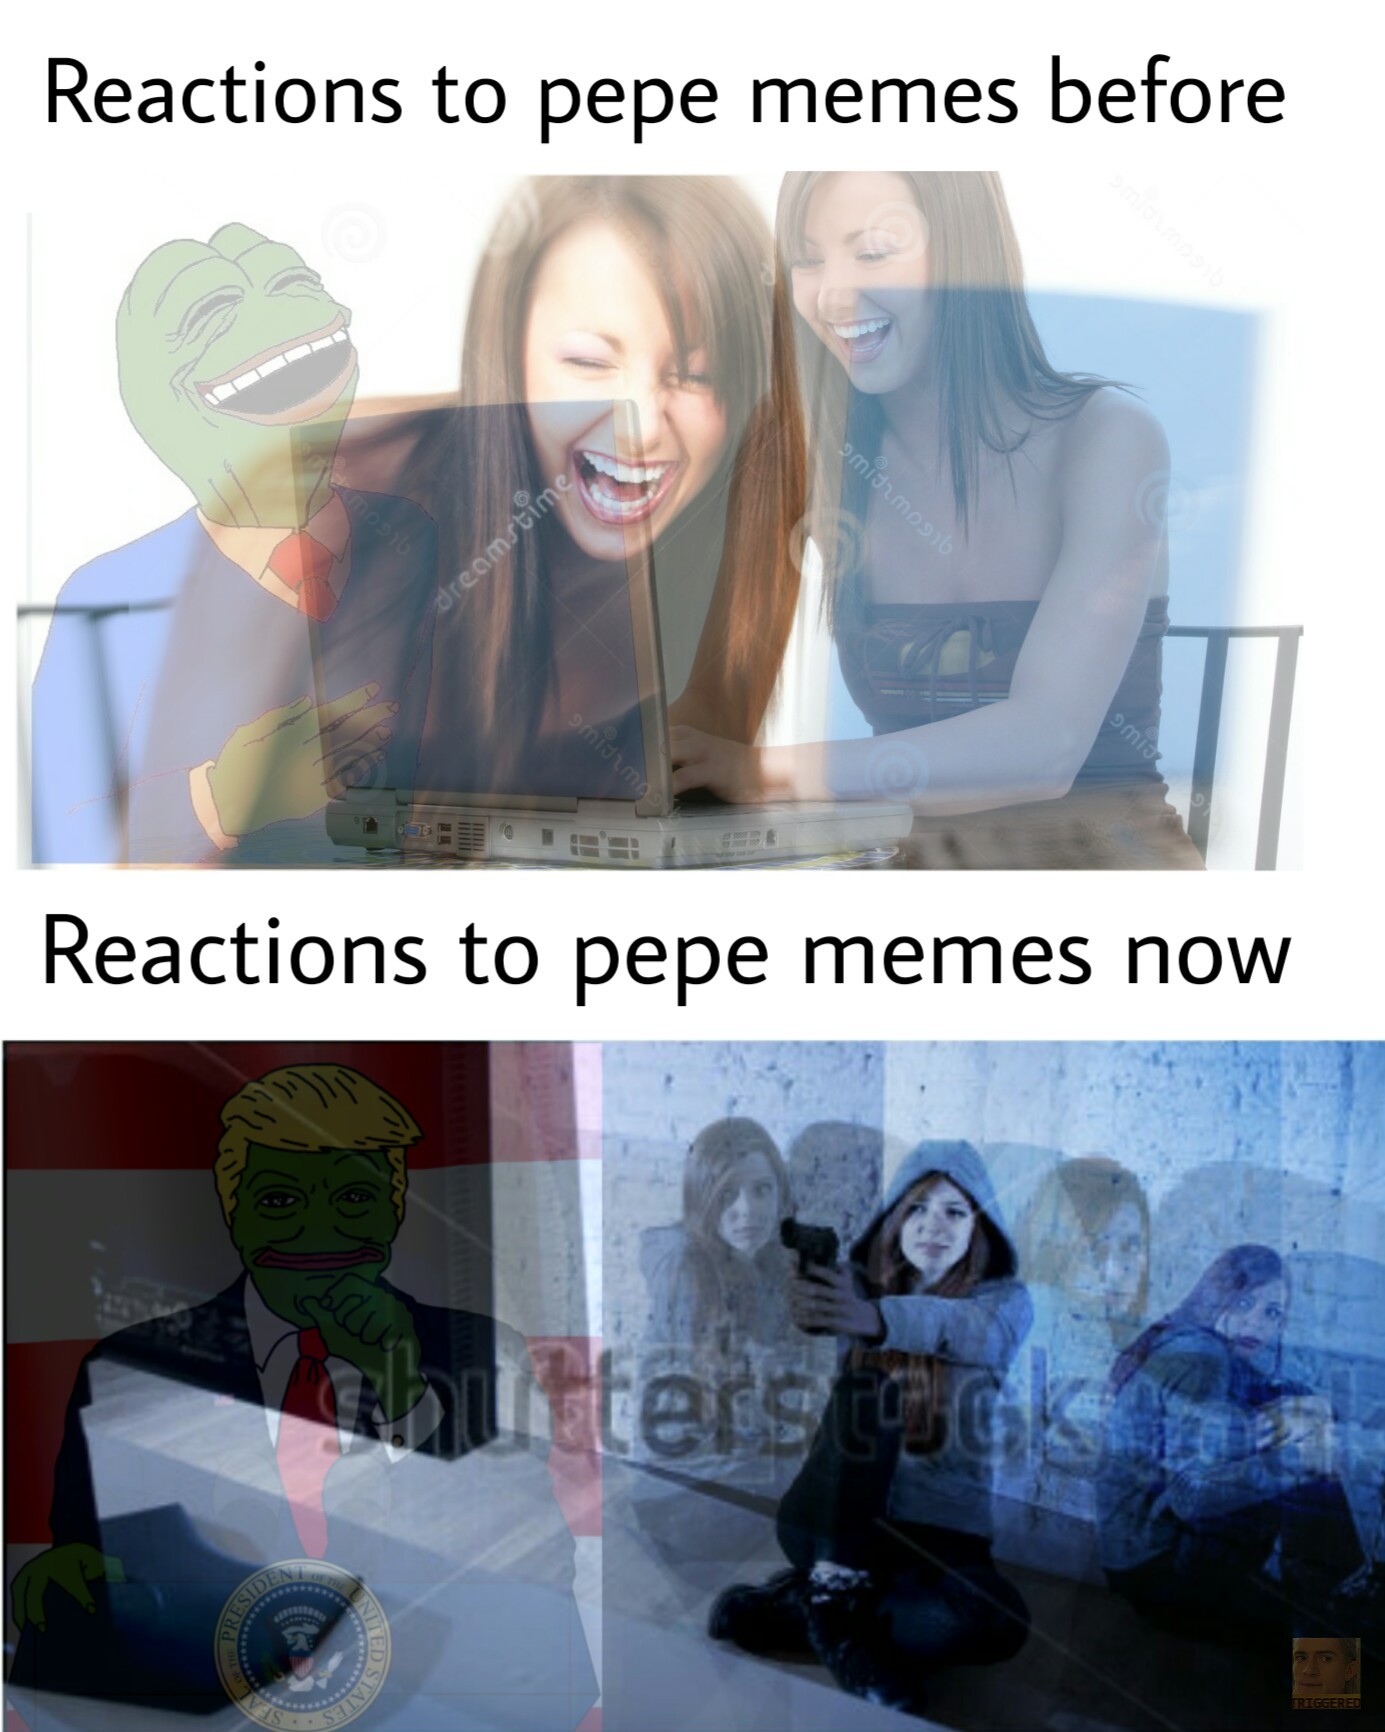 Pepe dindu nuffin - meme